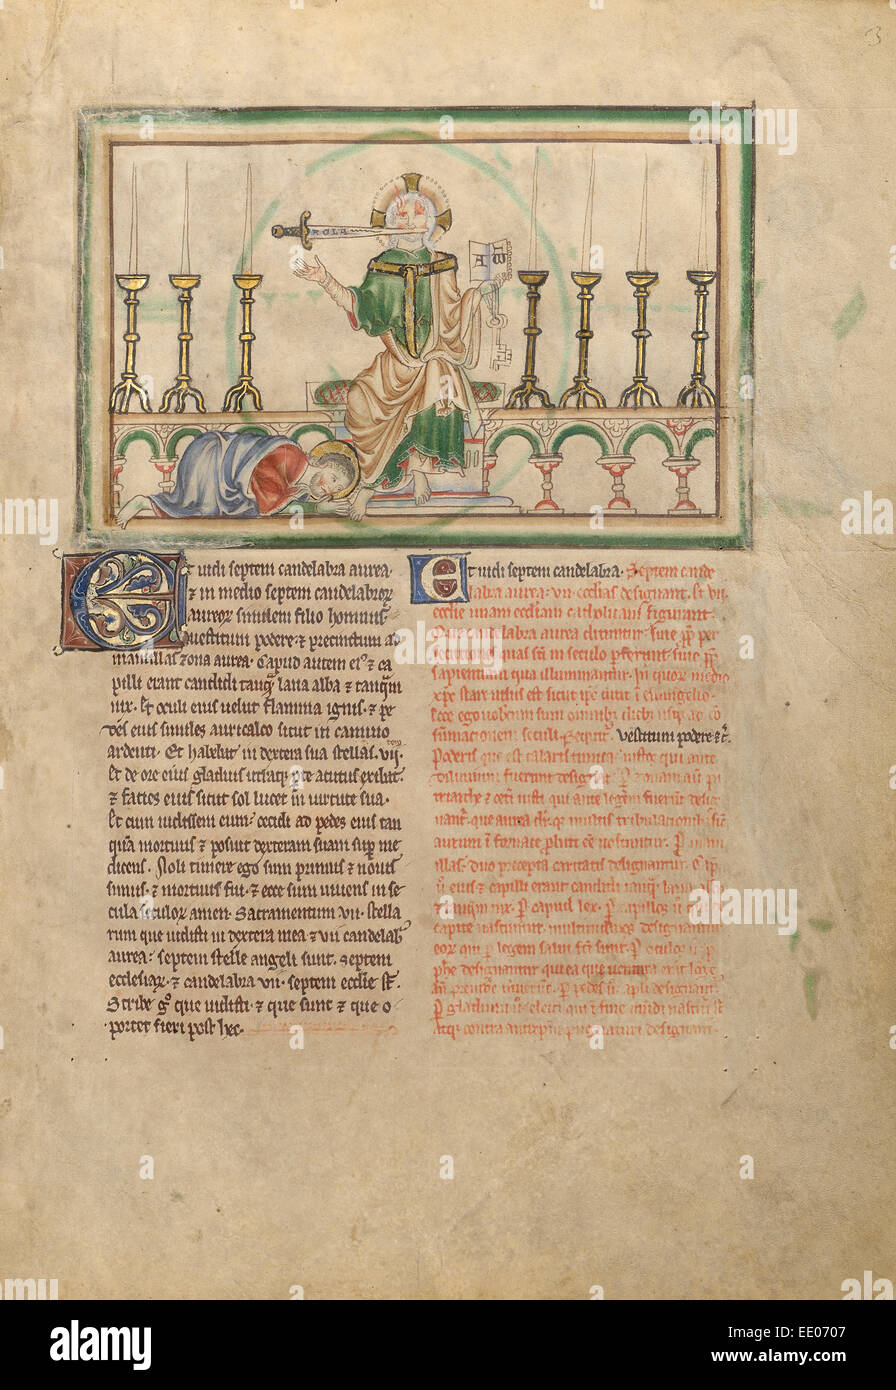 La visione di candele; sconosciuta; Londra (probabilmente), l'Inghilterra, l'Europa; circa 1255 - 1260; tempere, foglia oro, lavaggi colorati Foto Stock